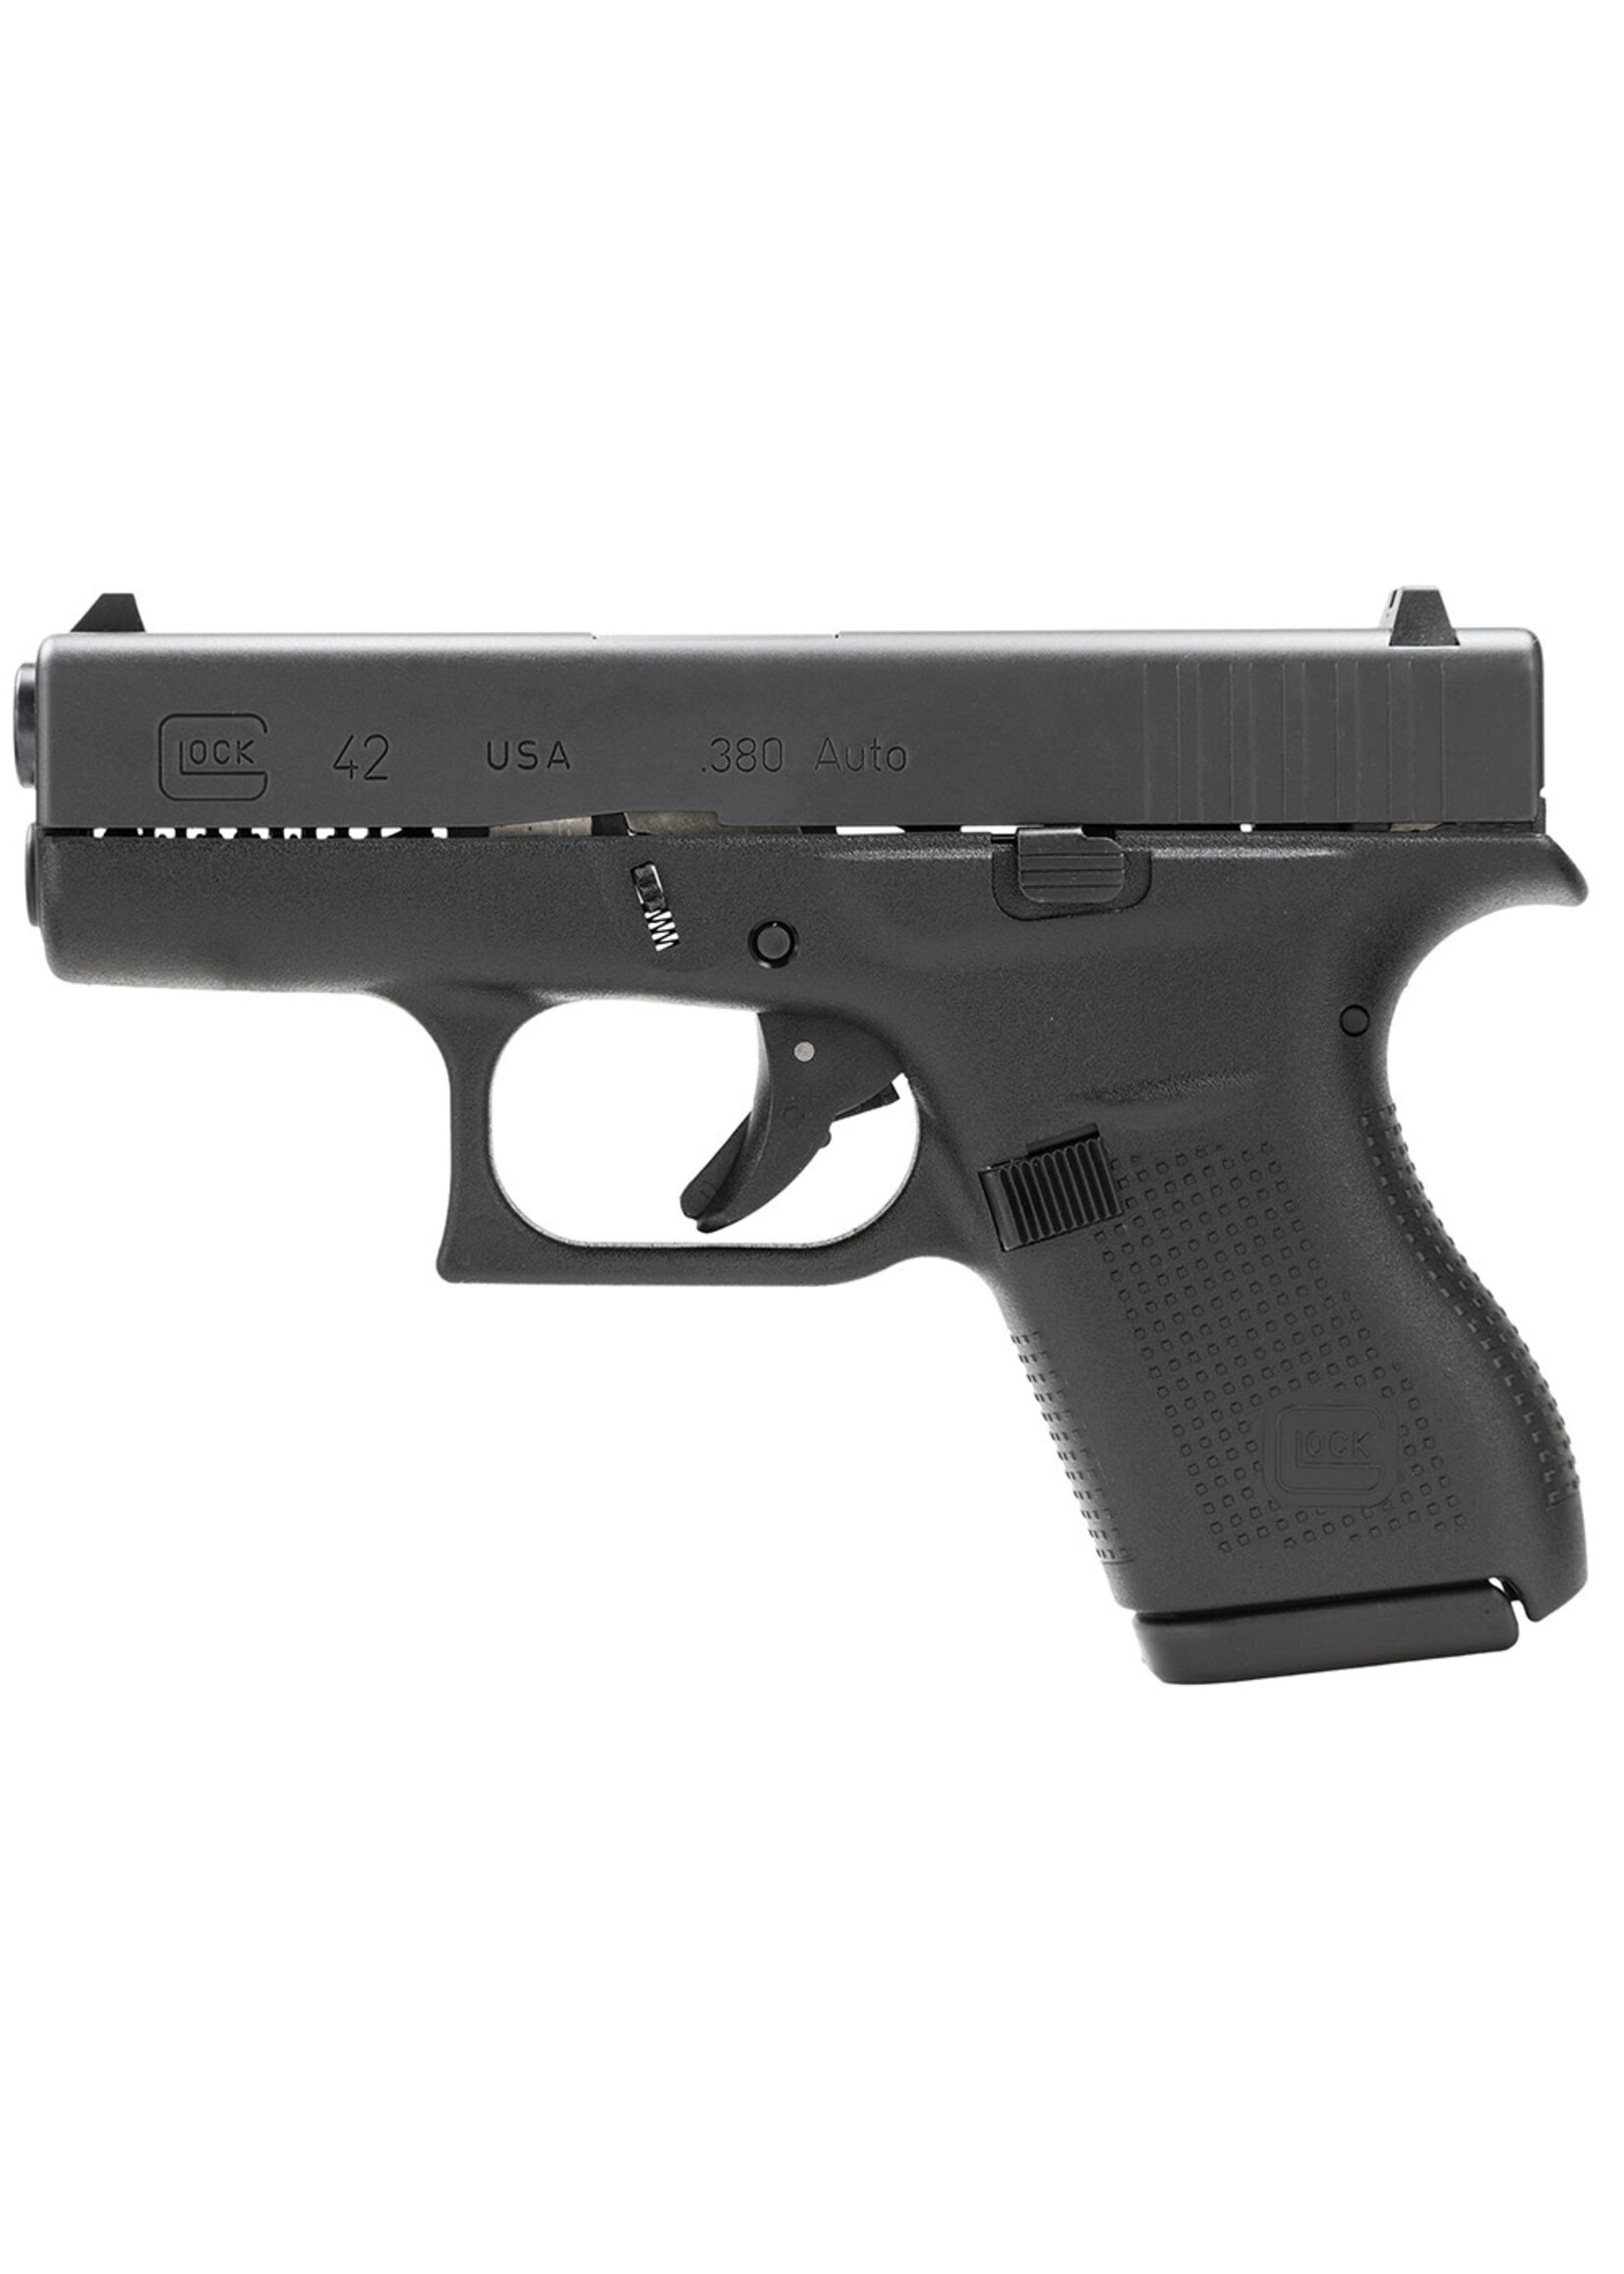 Glock SPECIAL ORDER Glock UI4250201 G42 Gen3 Subcompact 380 ACP 3.25" Barrel 6+1, Black Frame & Slide, Rough Textured Grip, Safe Action Trigger (US Made)